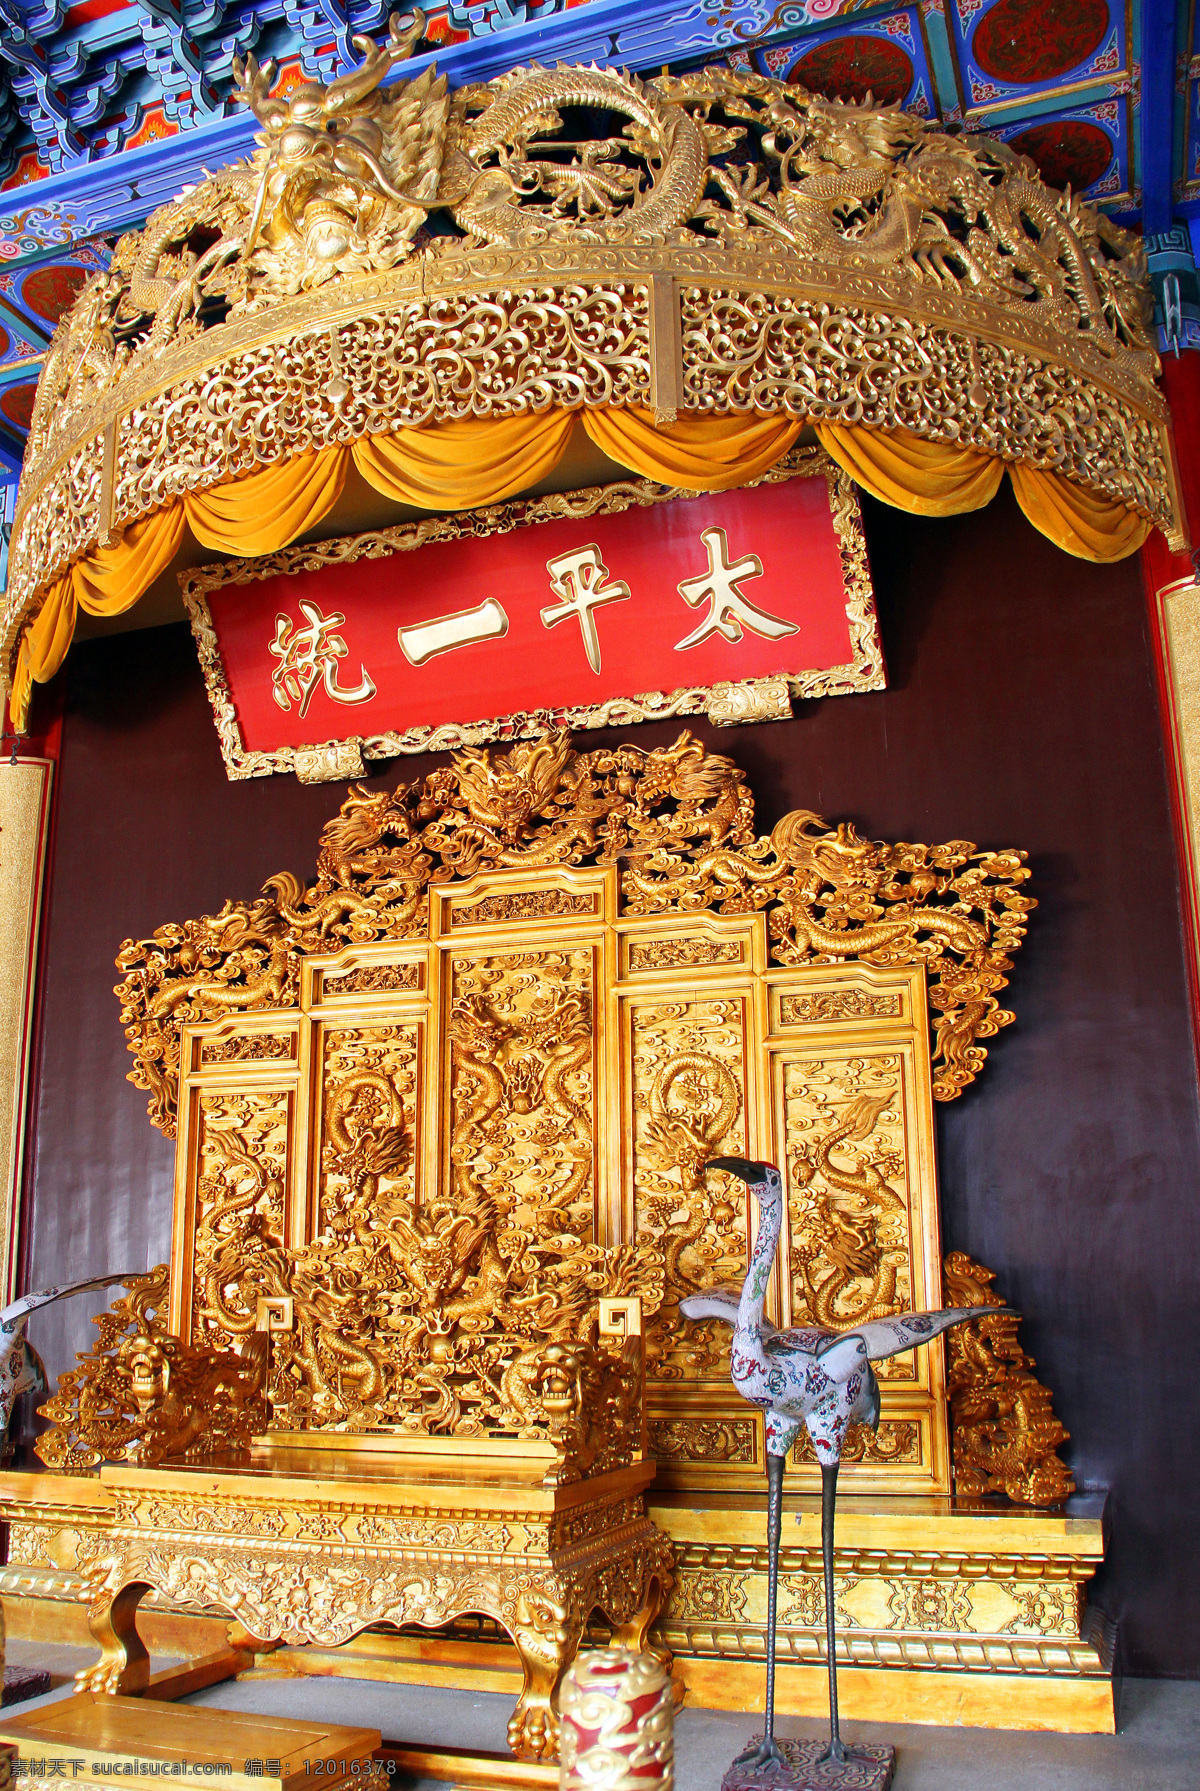 龙椅宝座 龙椅 宝座 历史 遗迹 太平天国 起义 领袖 金色 文物 象征 南京南京 旅游摄影 国内旅游